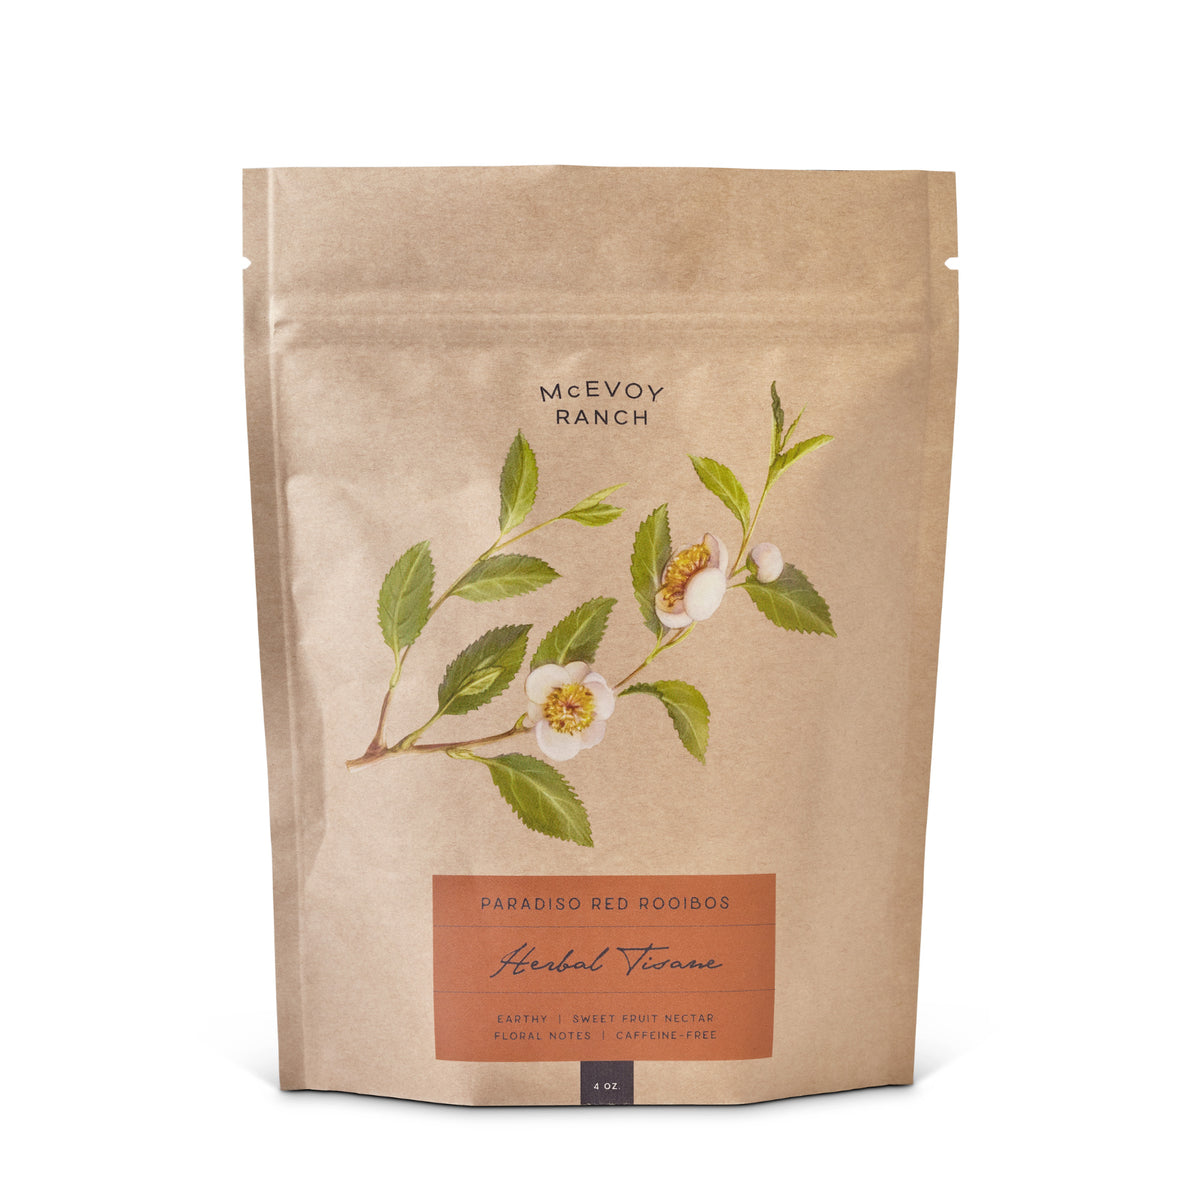 Paradiso Red Rooibos Herbal Tisane: Loose-Leaf Tea